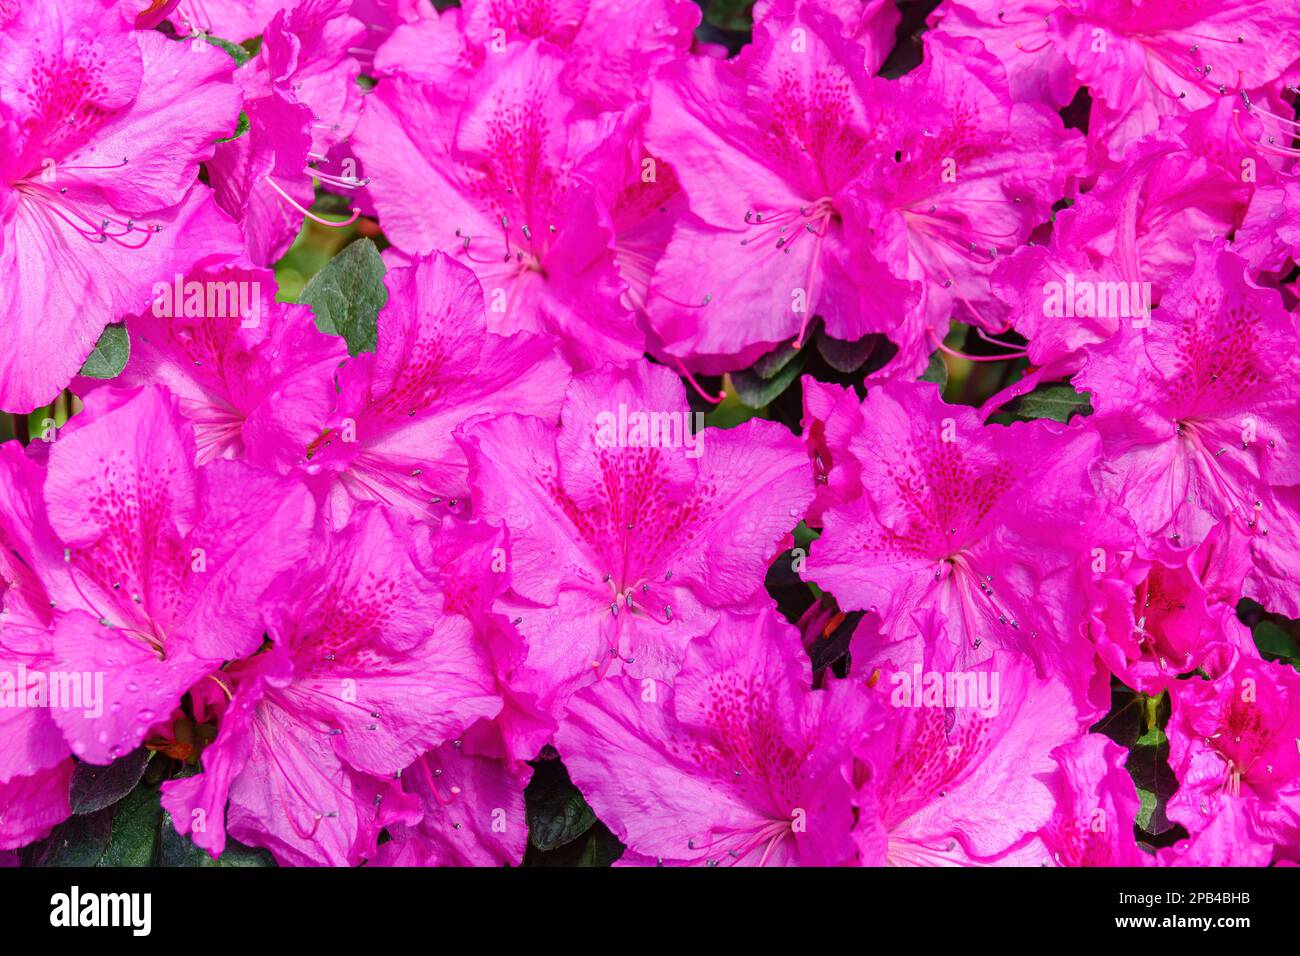 Exotic flowers background. Pink azalea flowers Stock Photo